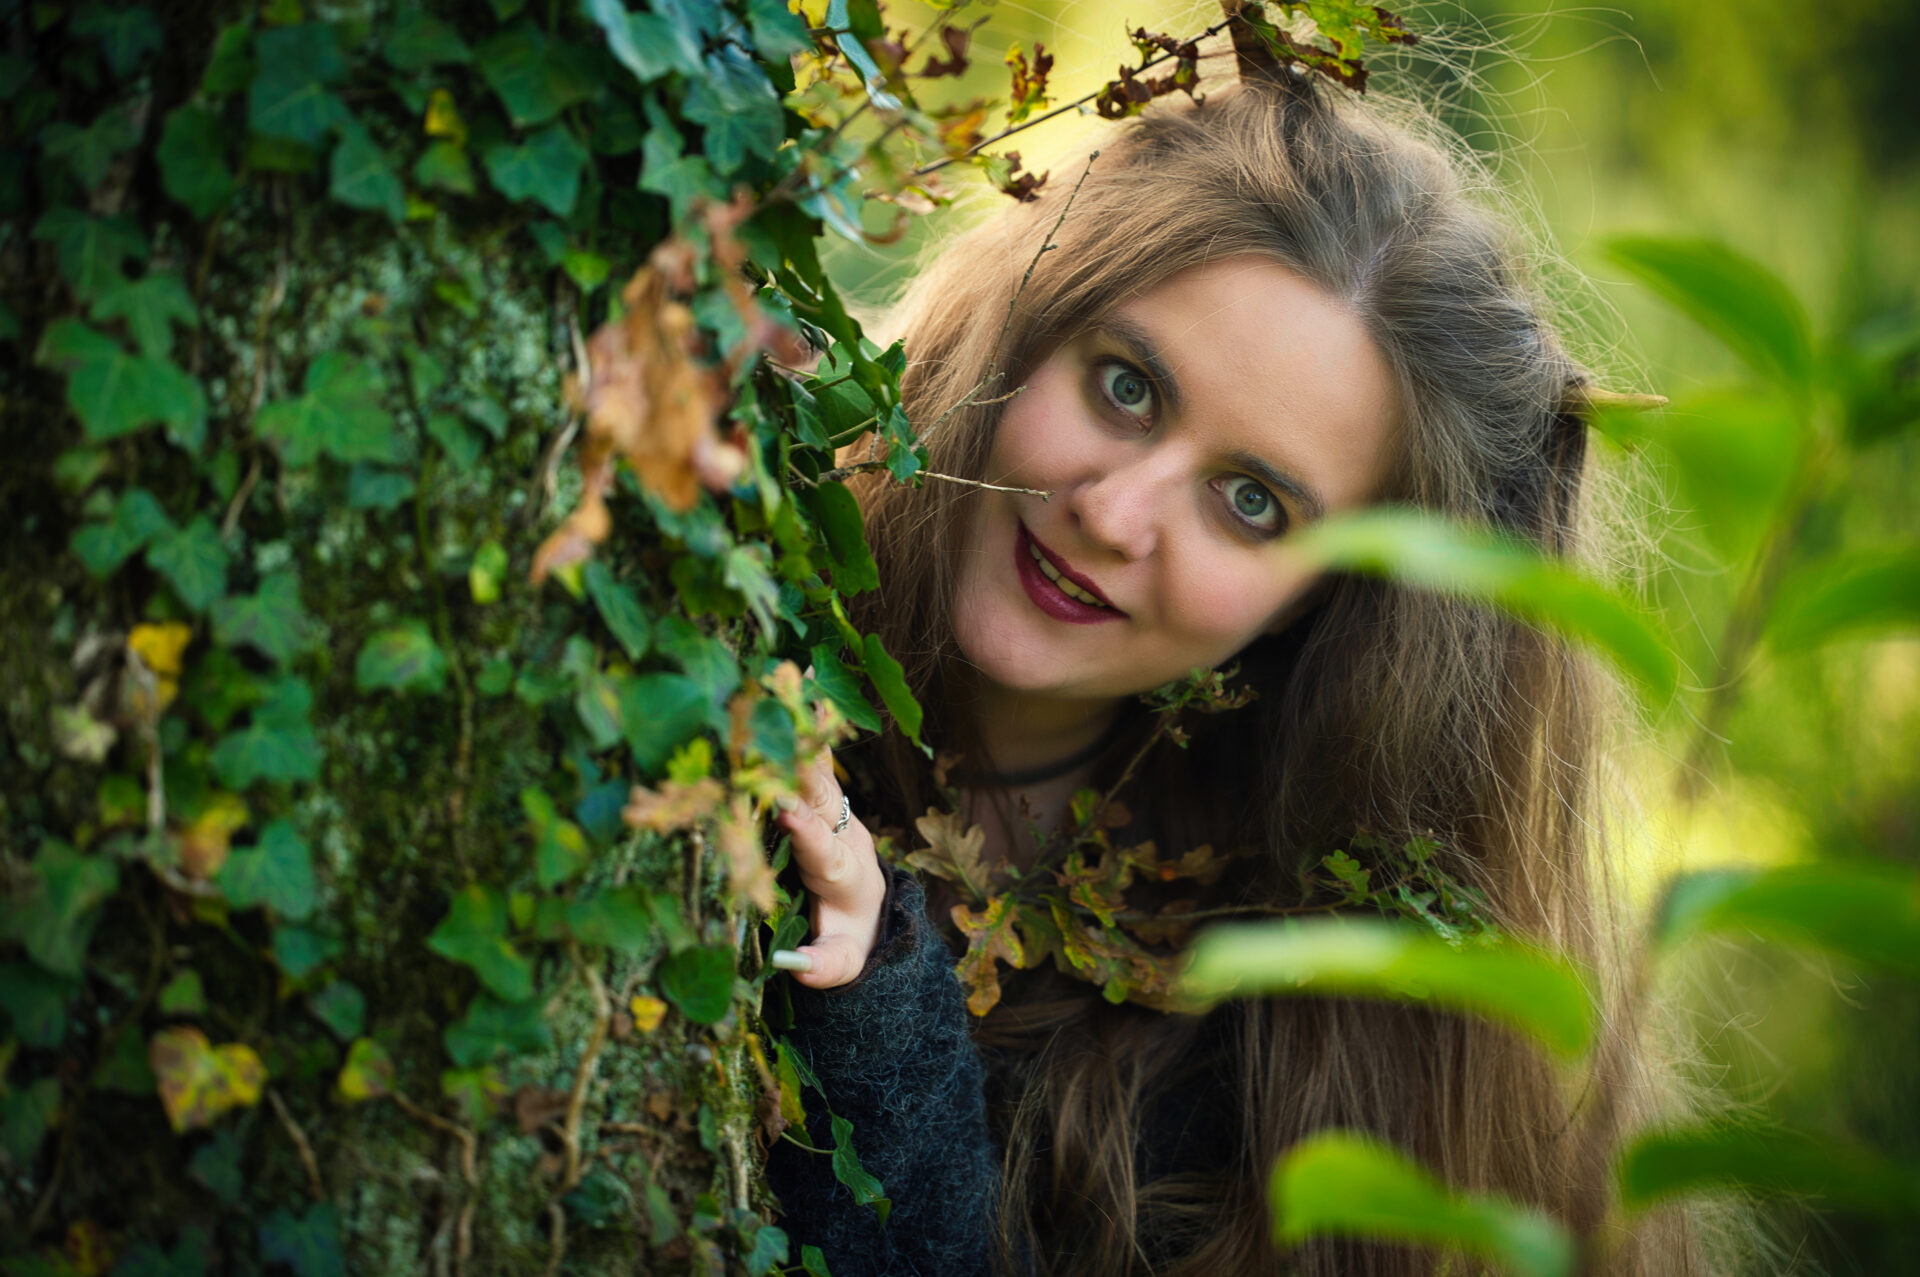 Elvya Dulcimer forest witch Elf Hobbit fantasy Musician Artist Liesbeth